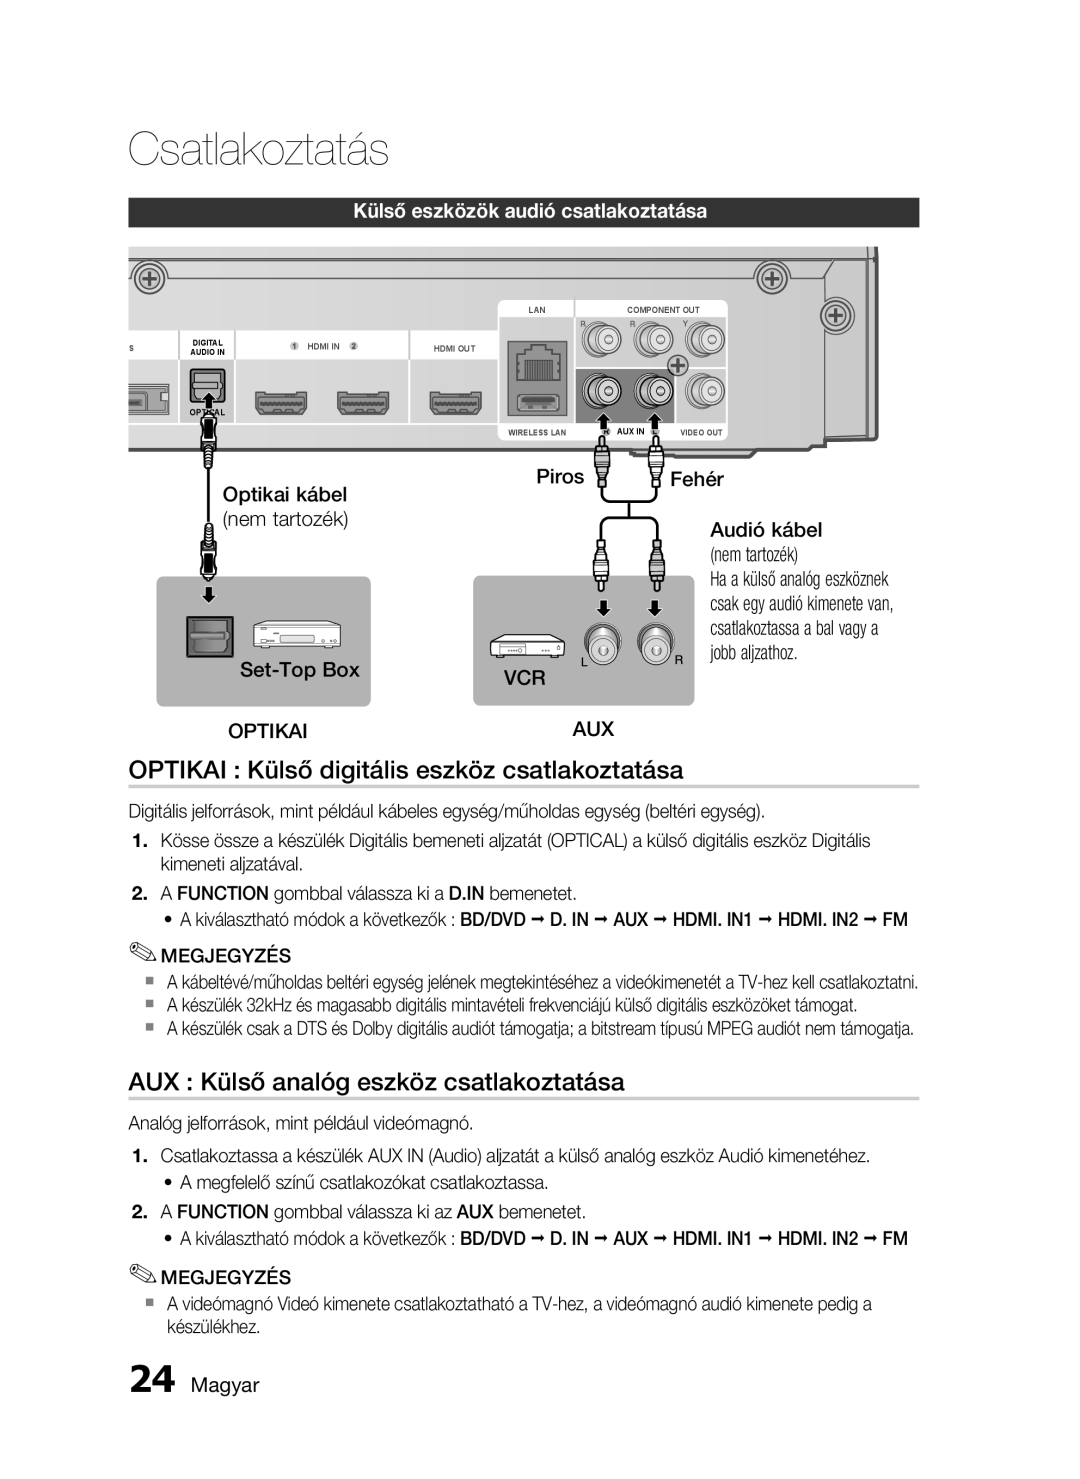 Samsung HT-C5900/XEF OPTIKAI Külső digitális eszköz csatlakoztatása, AUX Külső analóg eszköz csatlakoztatása, Piros VCR 